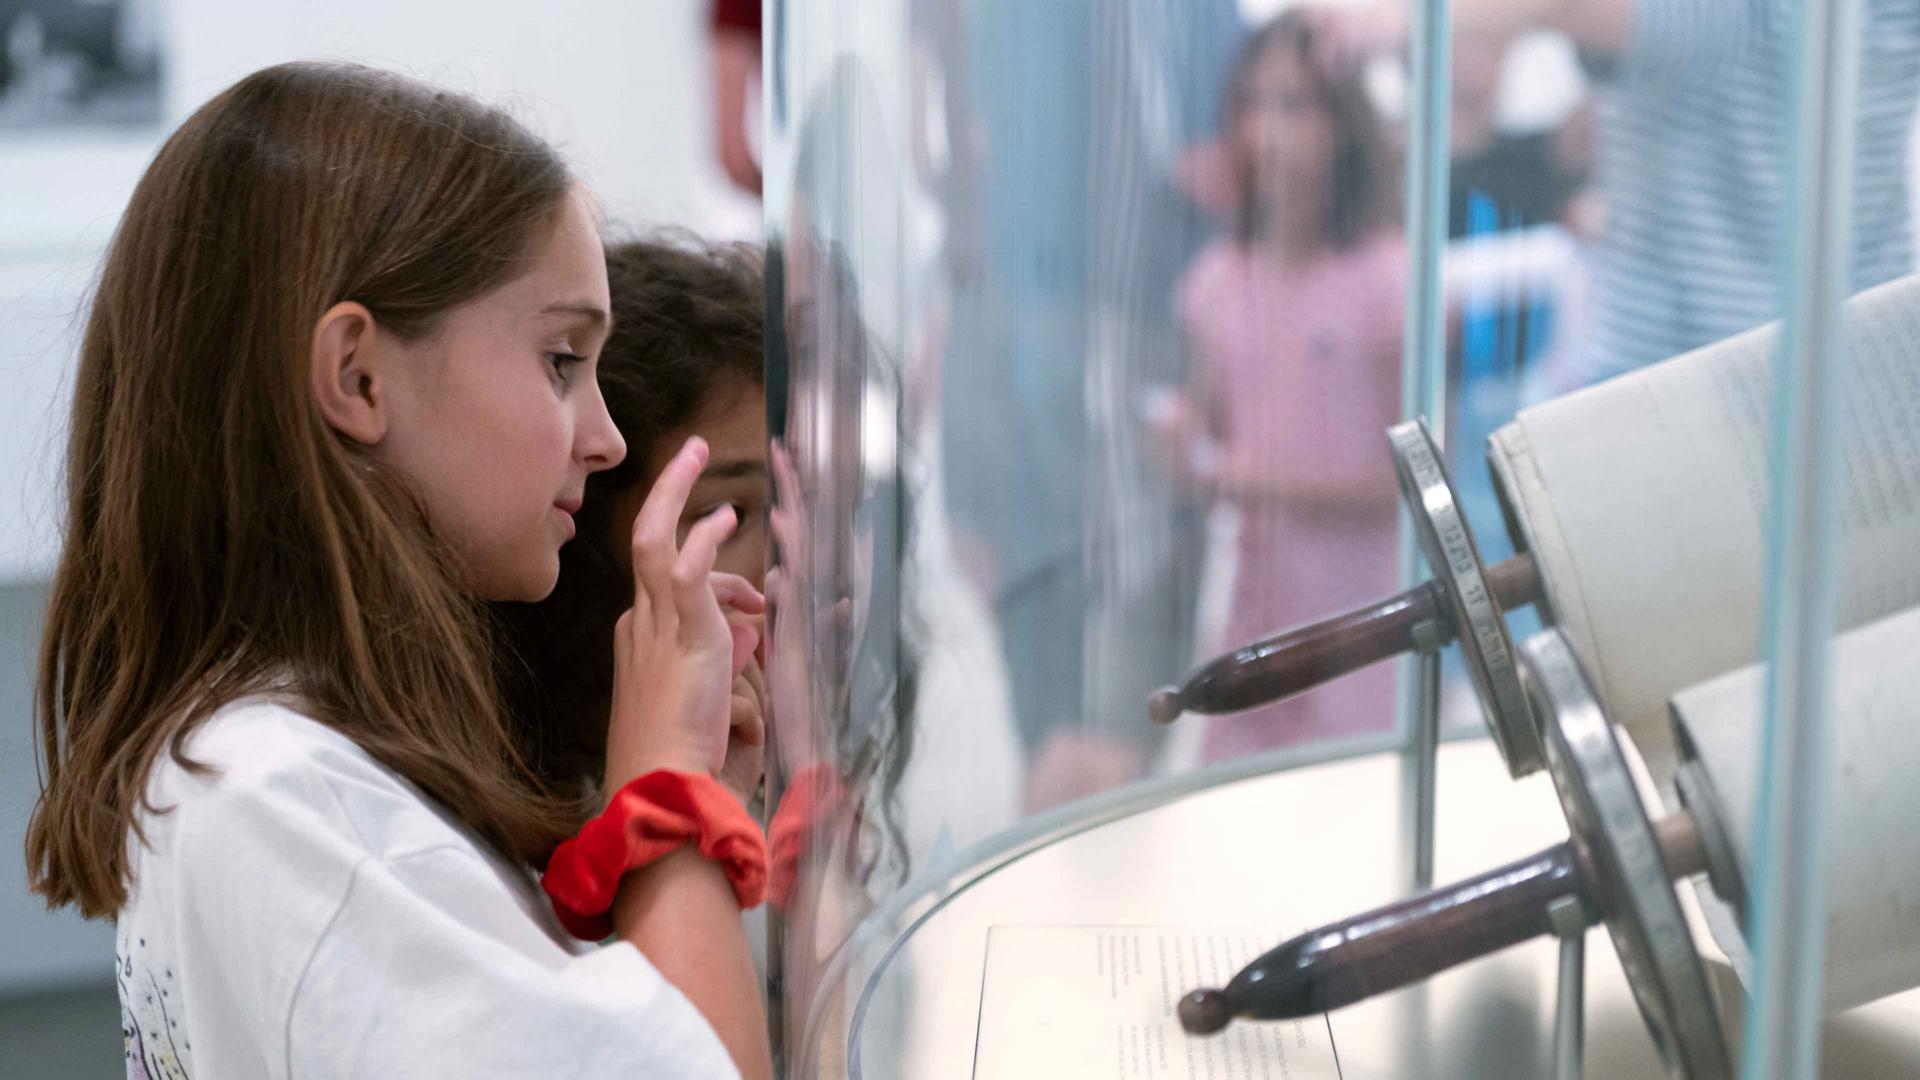 Zwei Kinder betrachten eine Tora-Rolle, die sich hinter einer gewölbten Glasscheibe befindet.